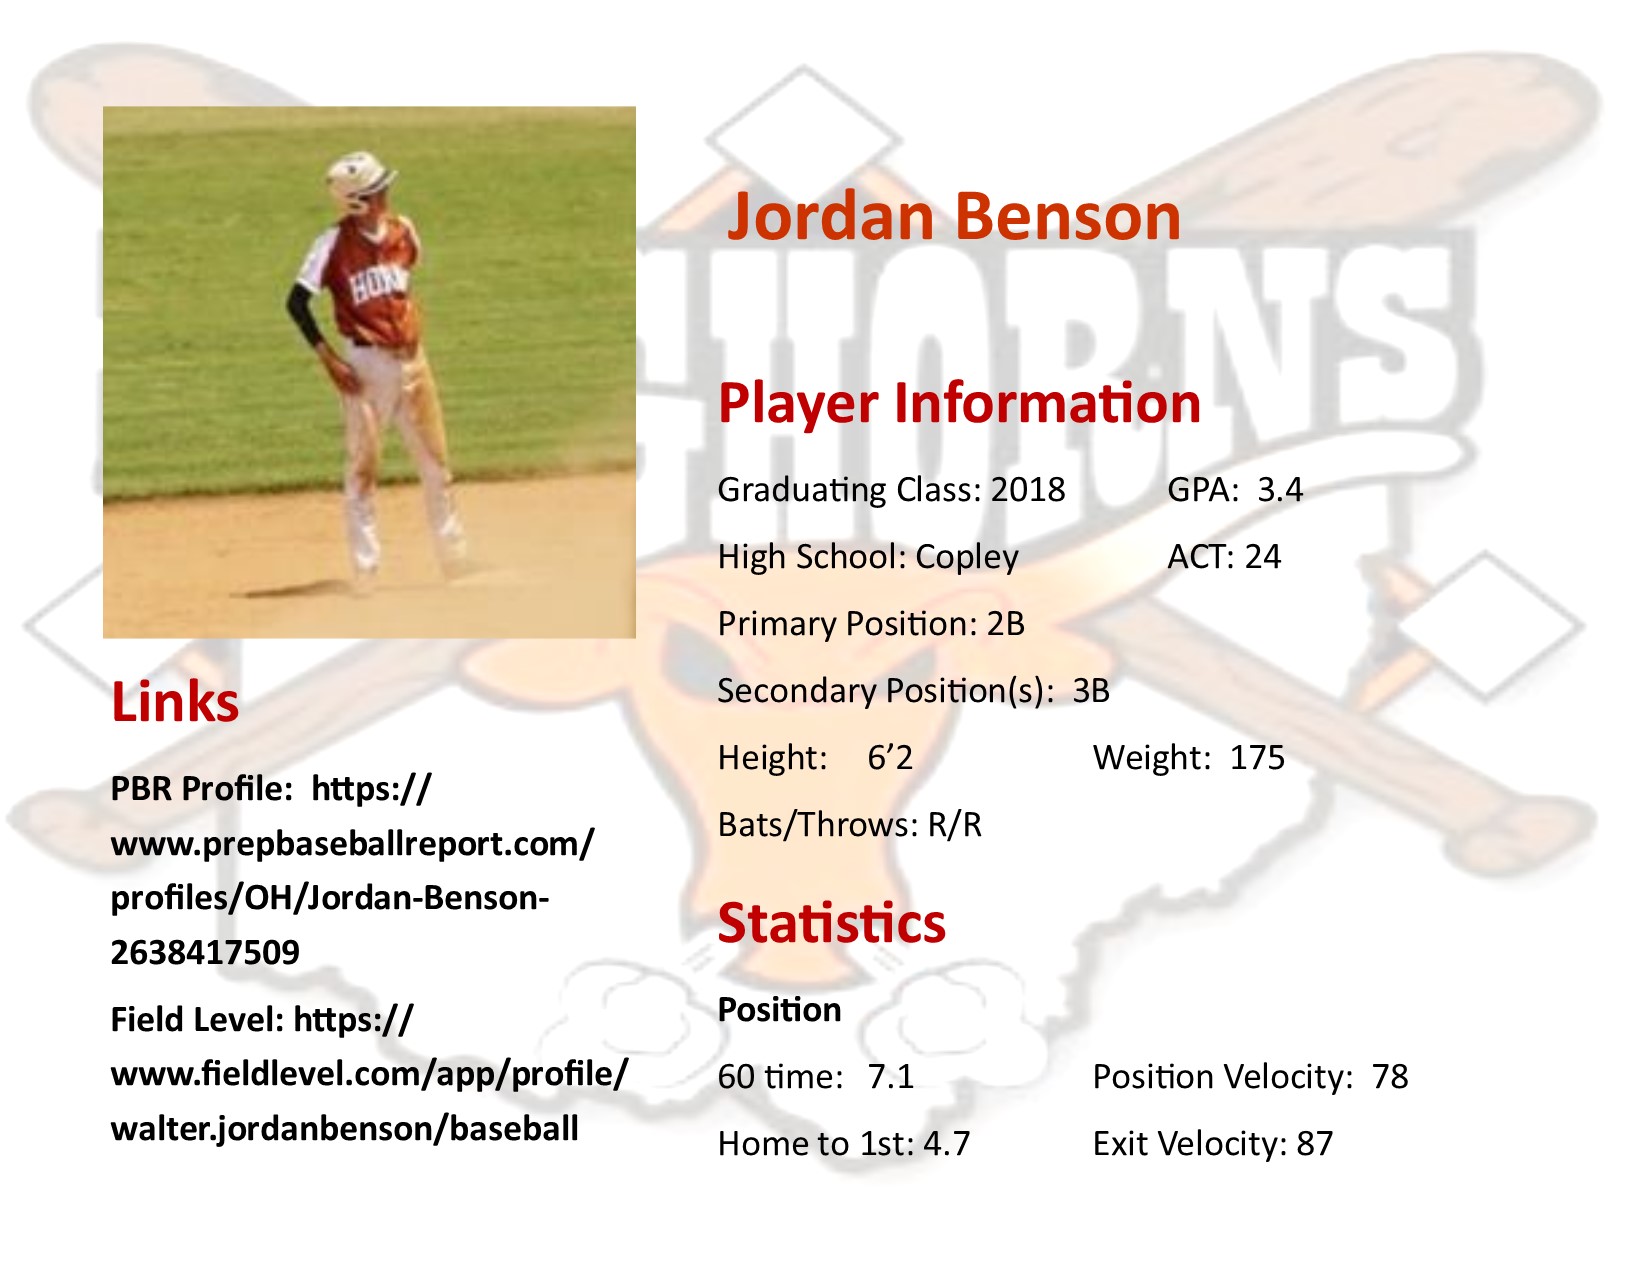 Jordan Benson